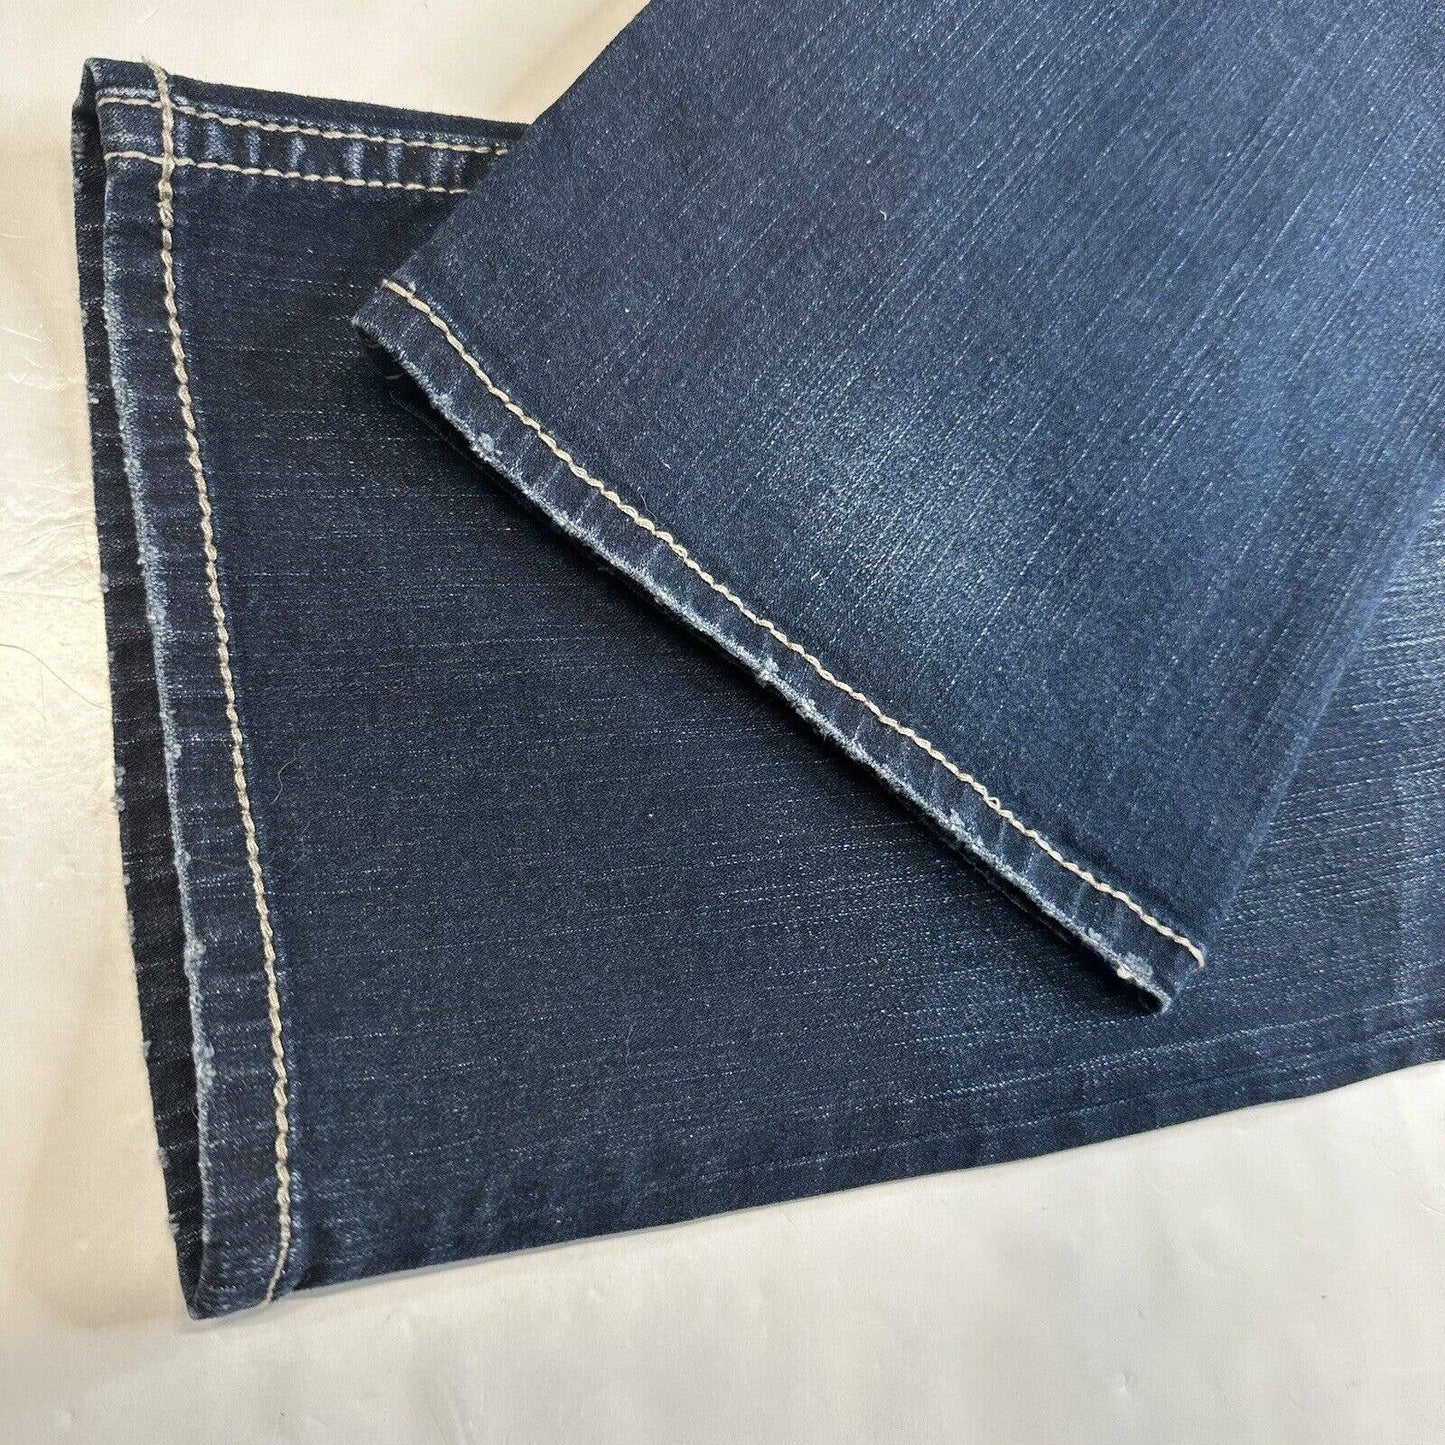 Silver Suki Capri Jeans 18 Curvy Midrise Stretch Denim Blue Jean Dark Plus Size